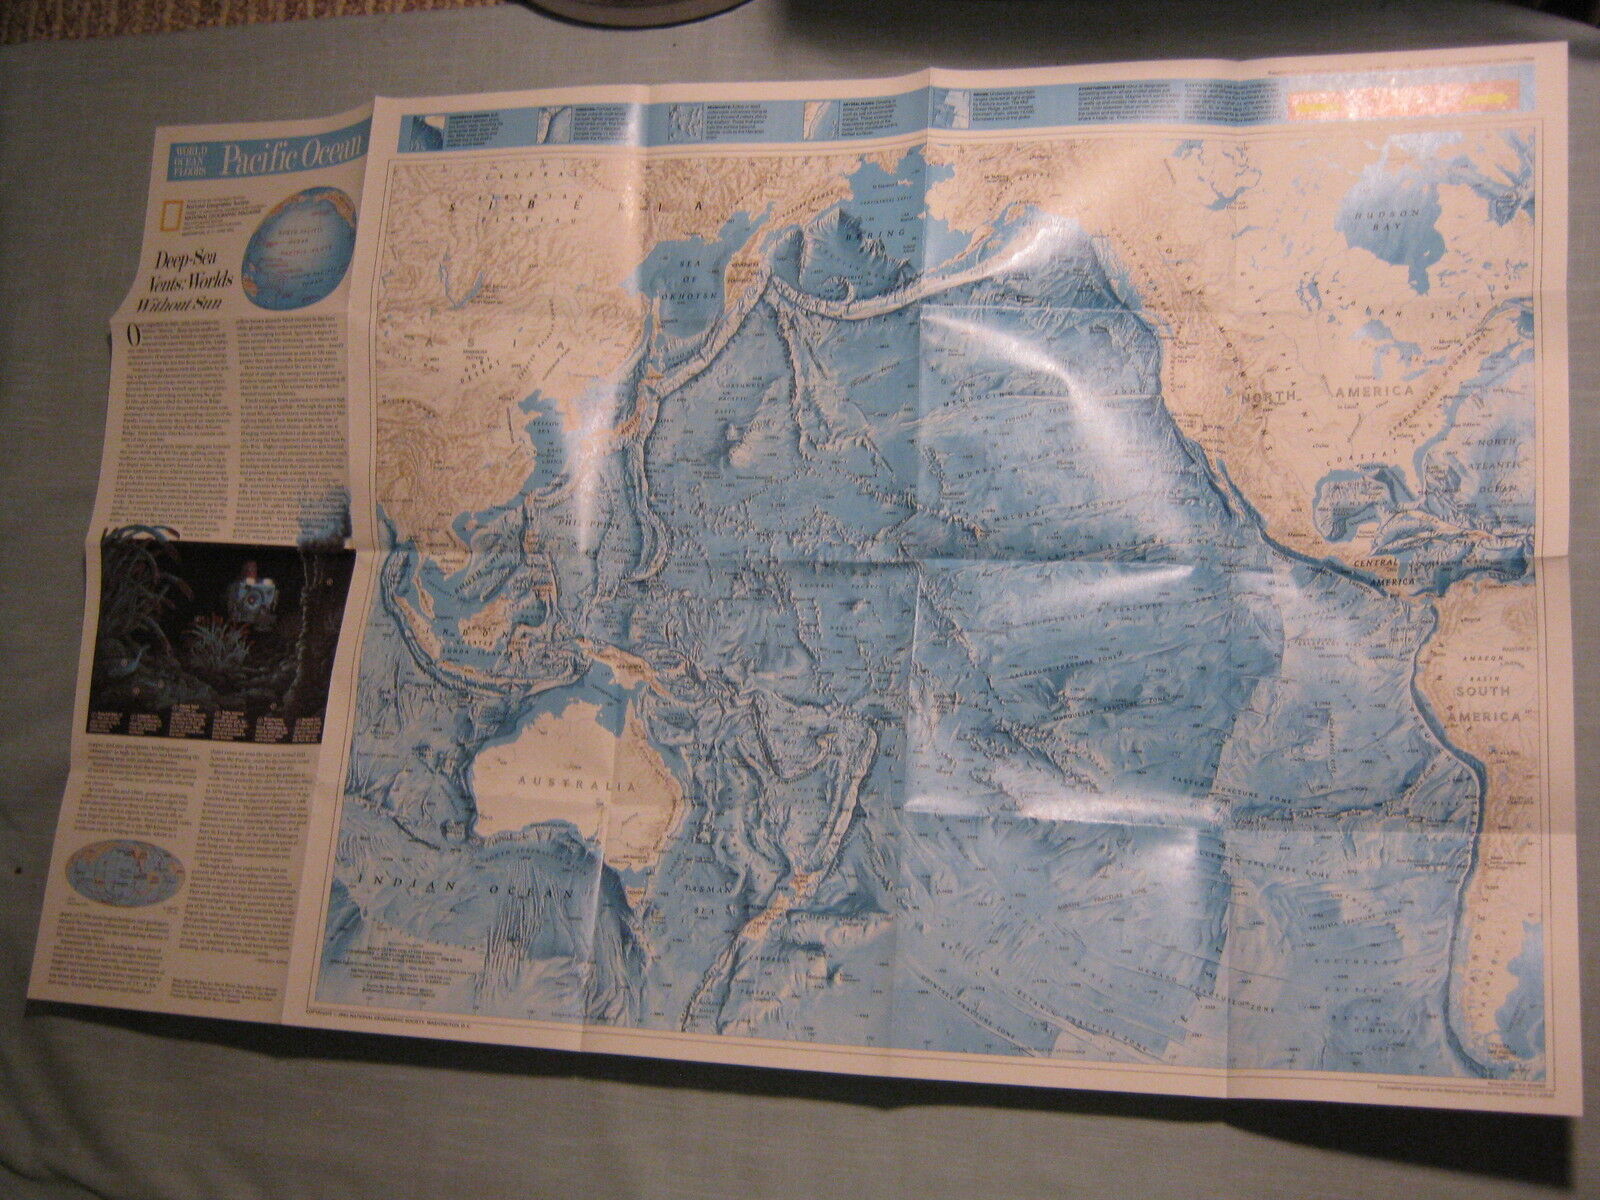 PACIFIC OCEAN + INDIAN OCEAN FLOOR MAP National Geographic June 1992